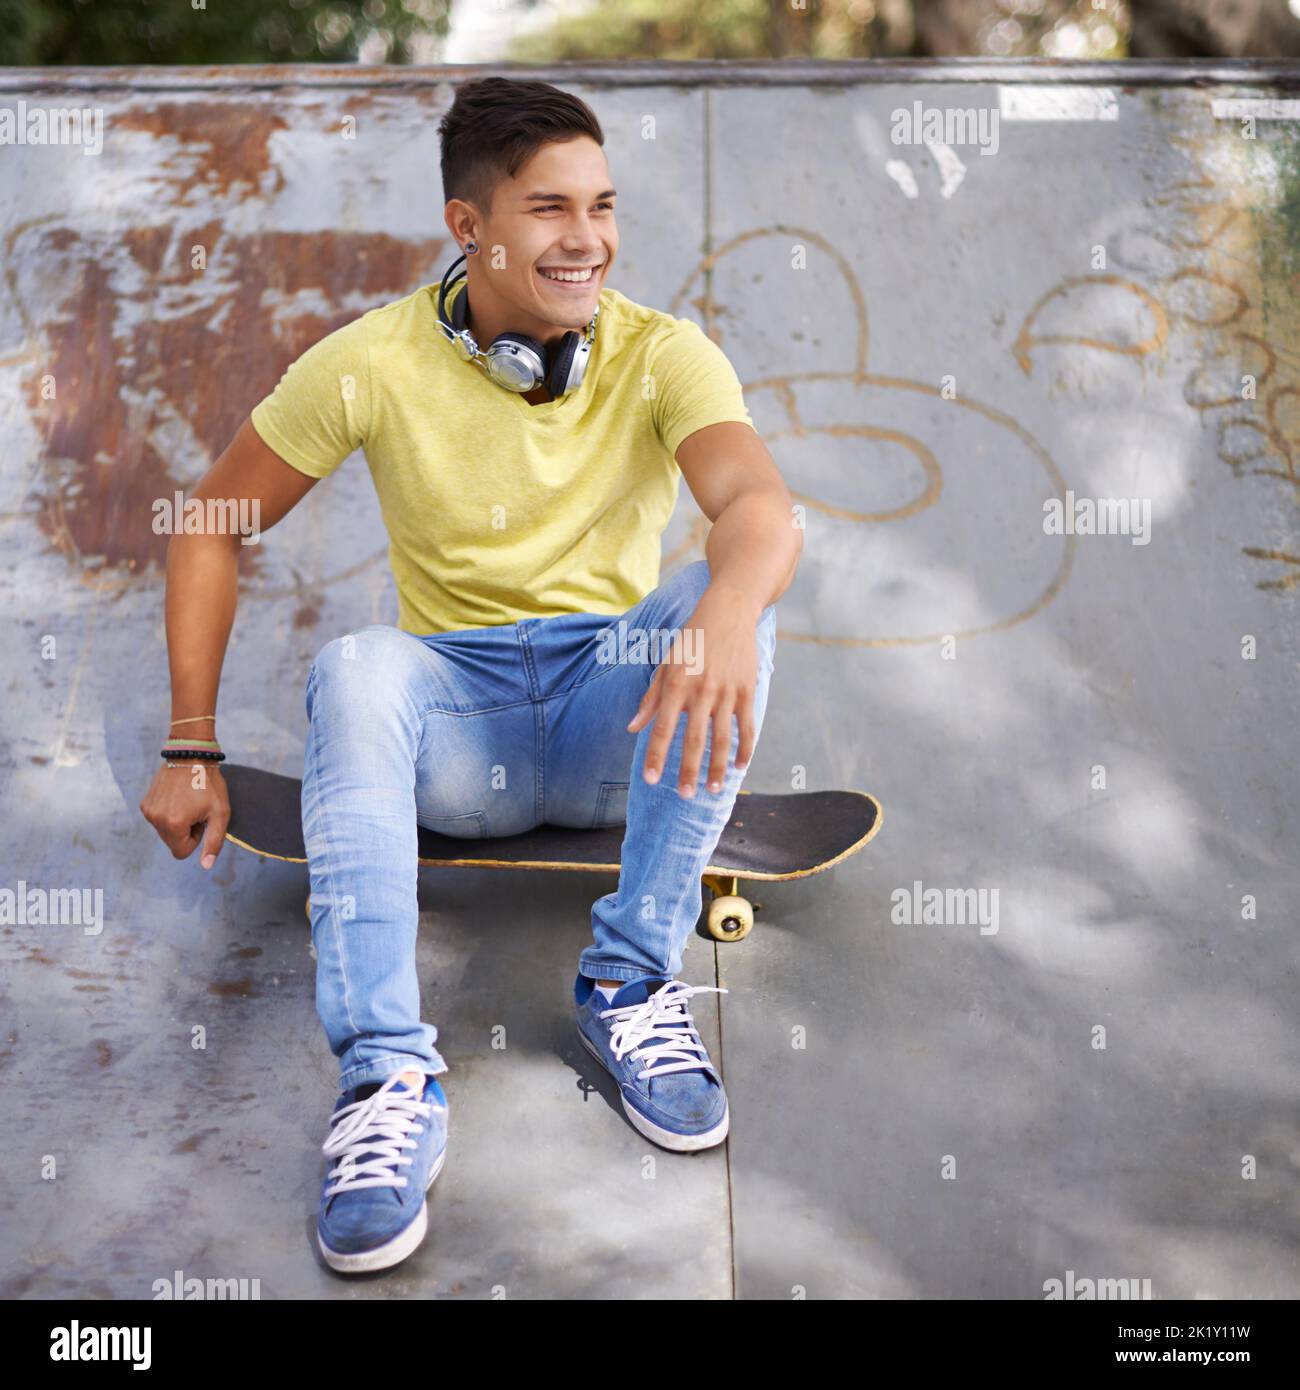 Une autre journée formidable a passé le skateboard. Un jeune skateboarder se détend dans un parc de skate Banque D'Images